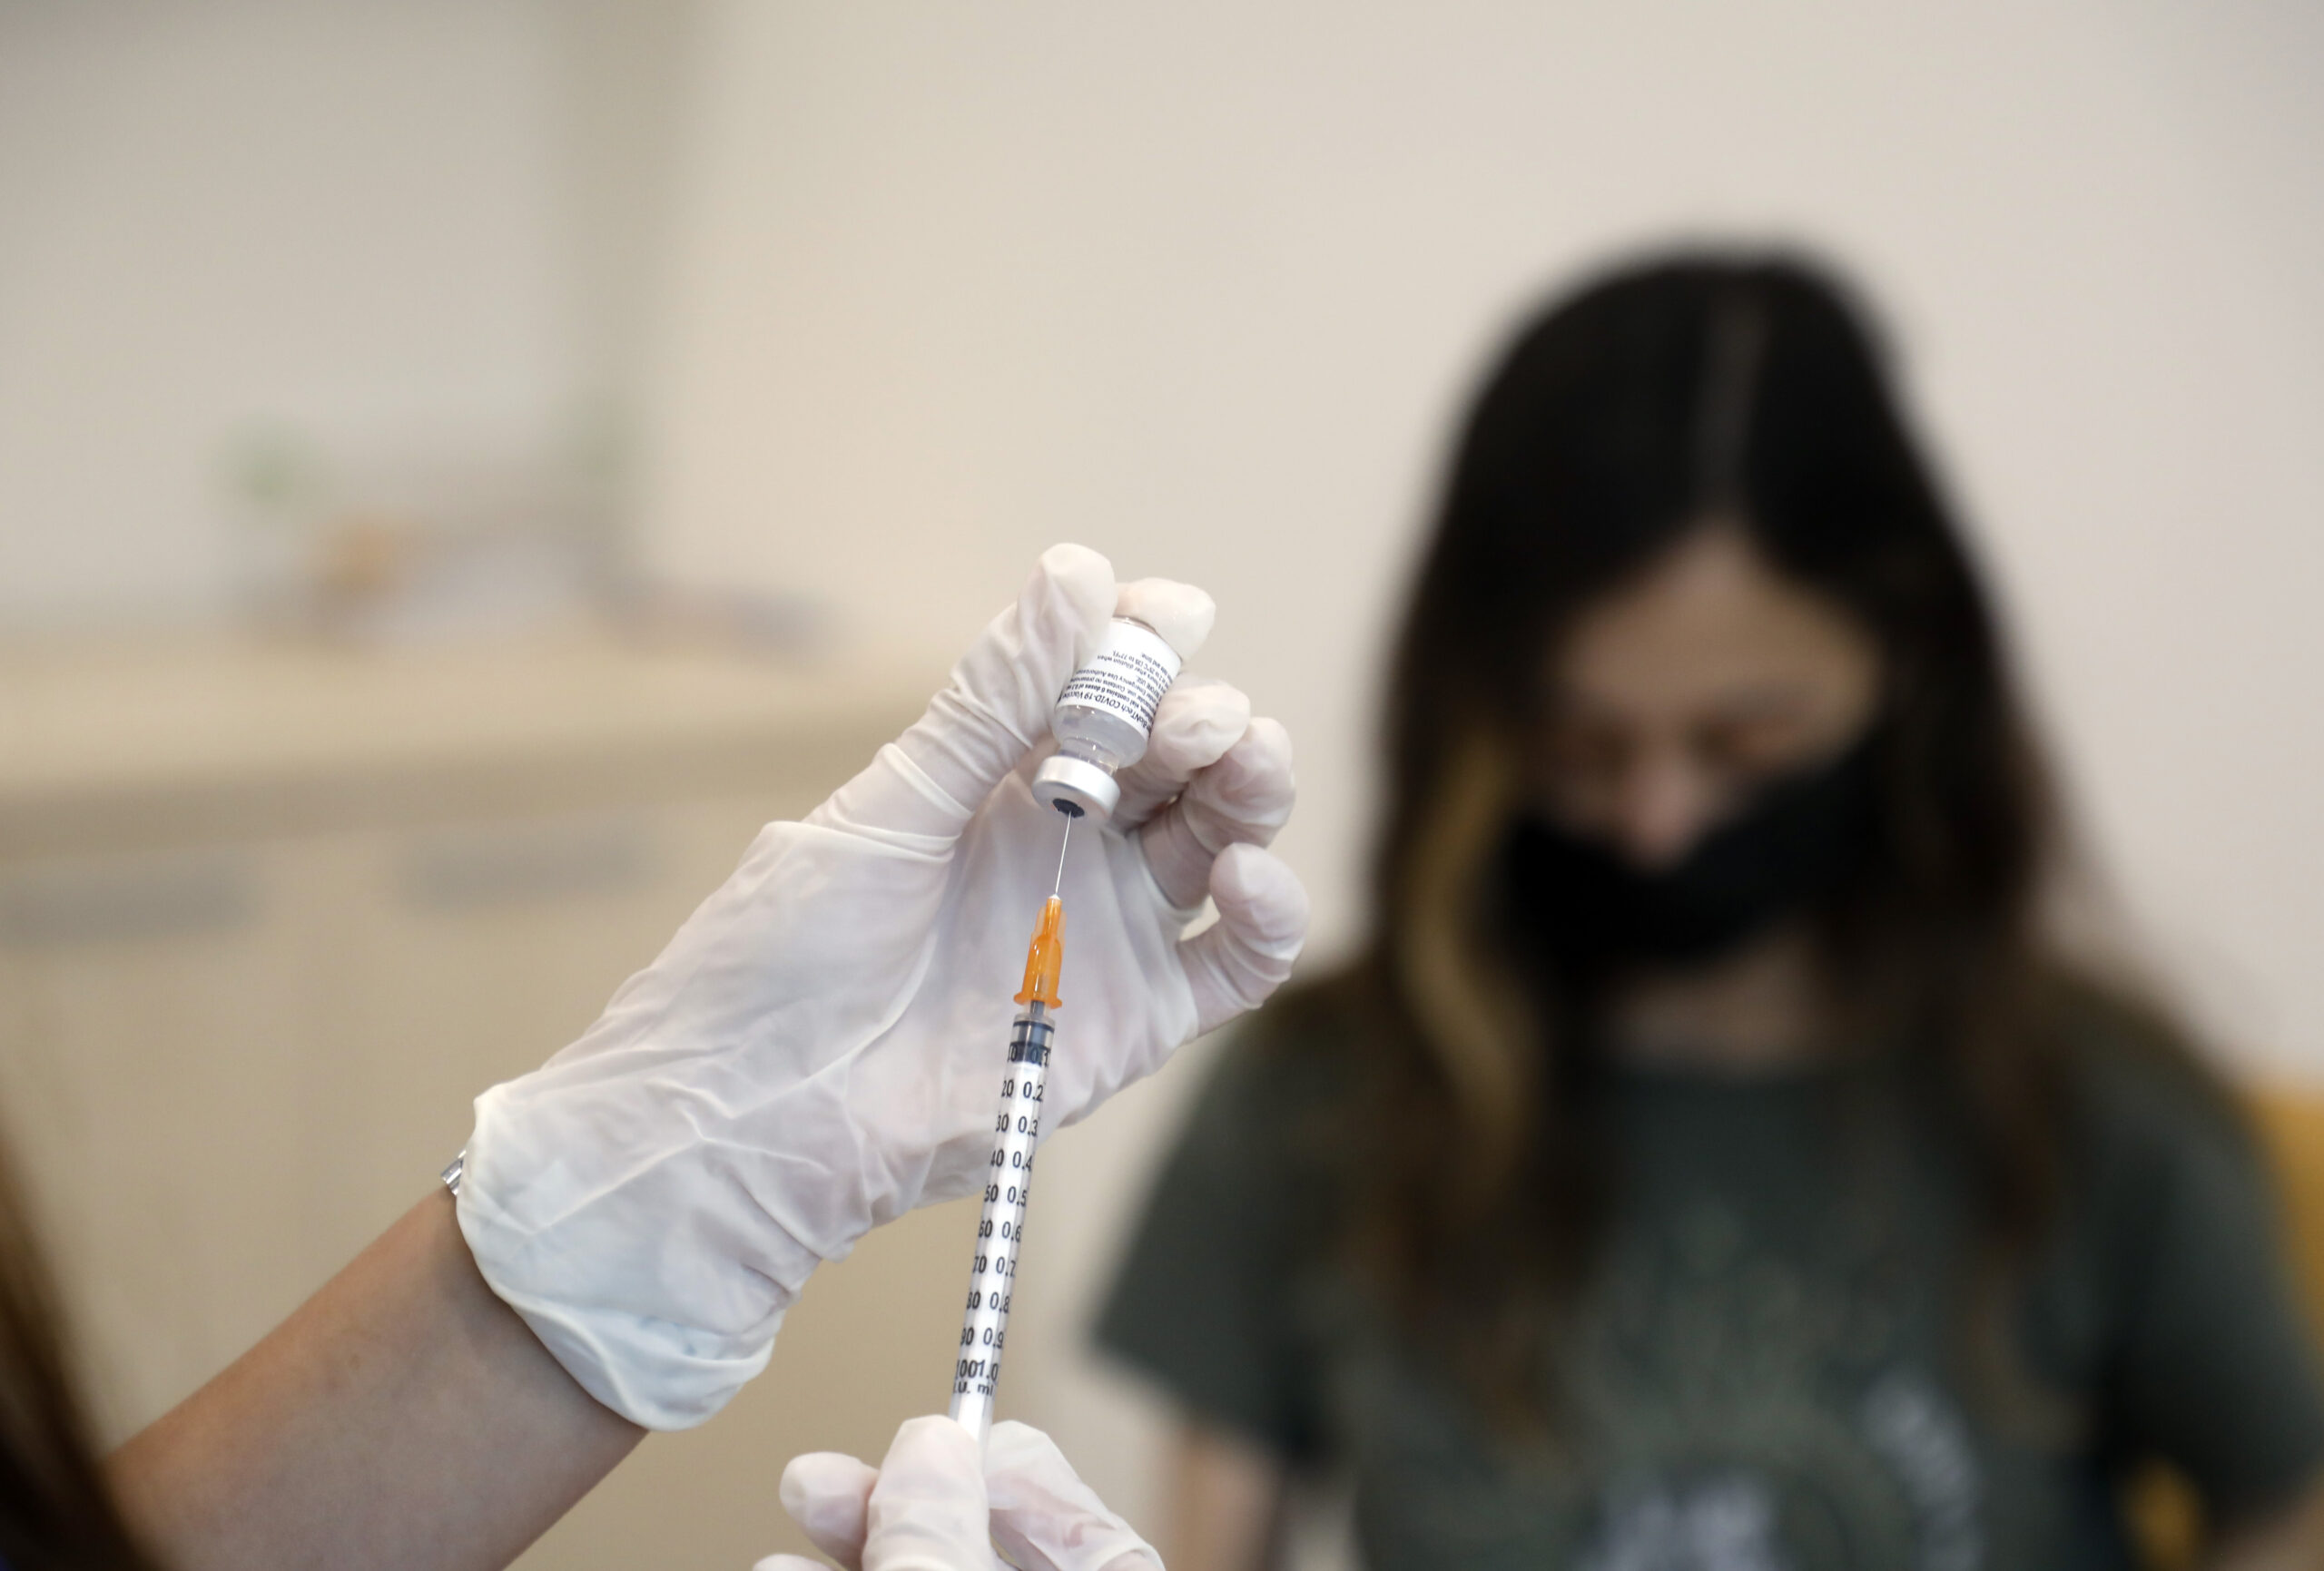 ตุรกีรวบพยาบาลขายใบรับรองฉีดวัคซีนโควิด-19 ปลอม